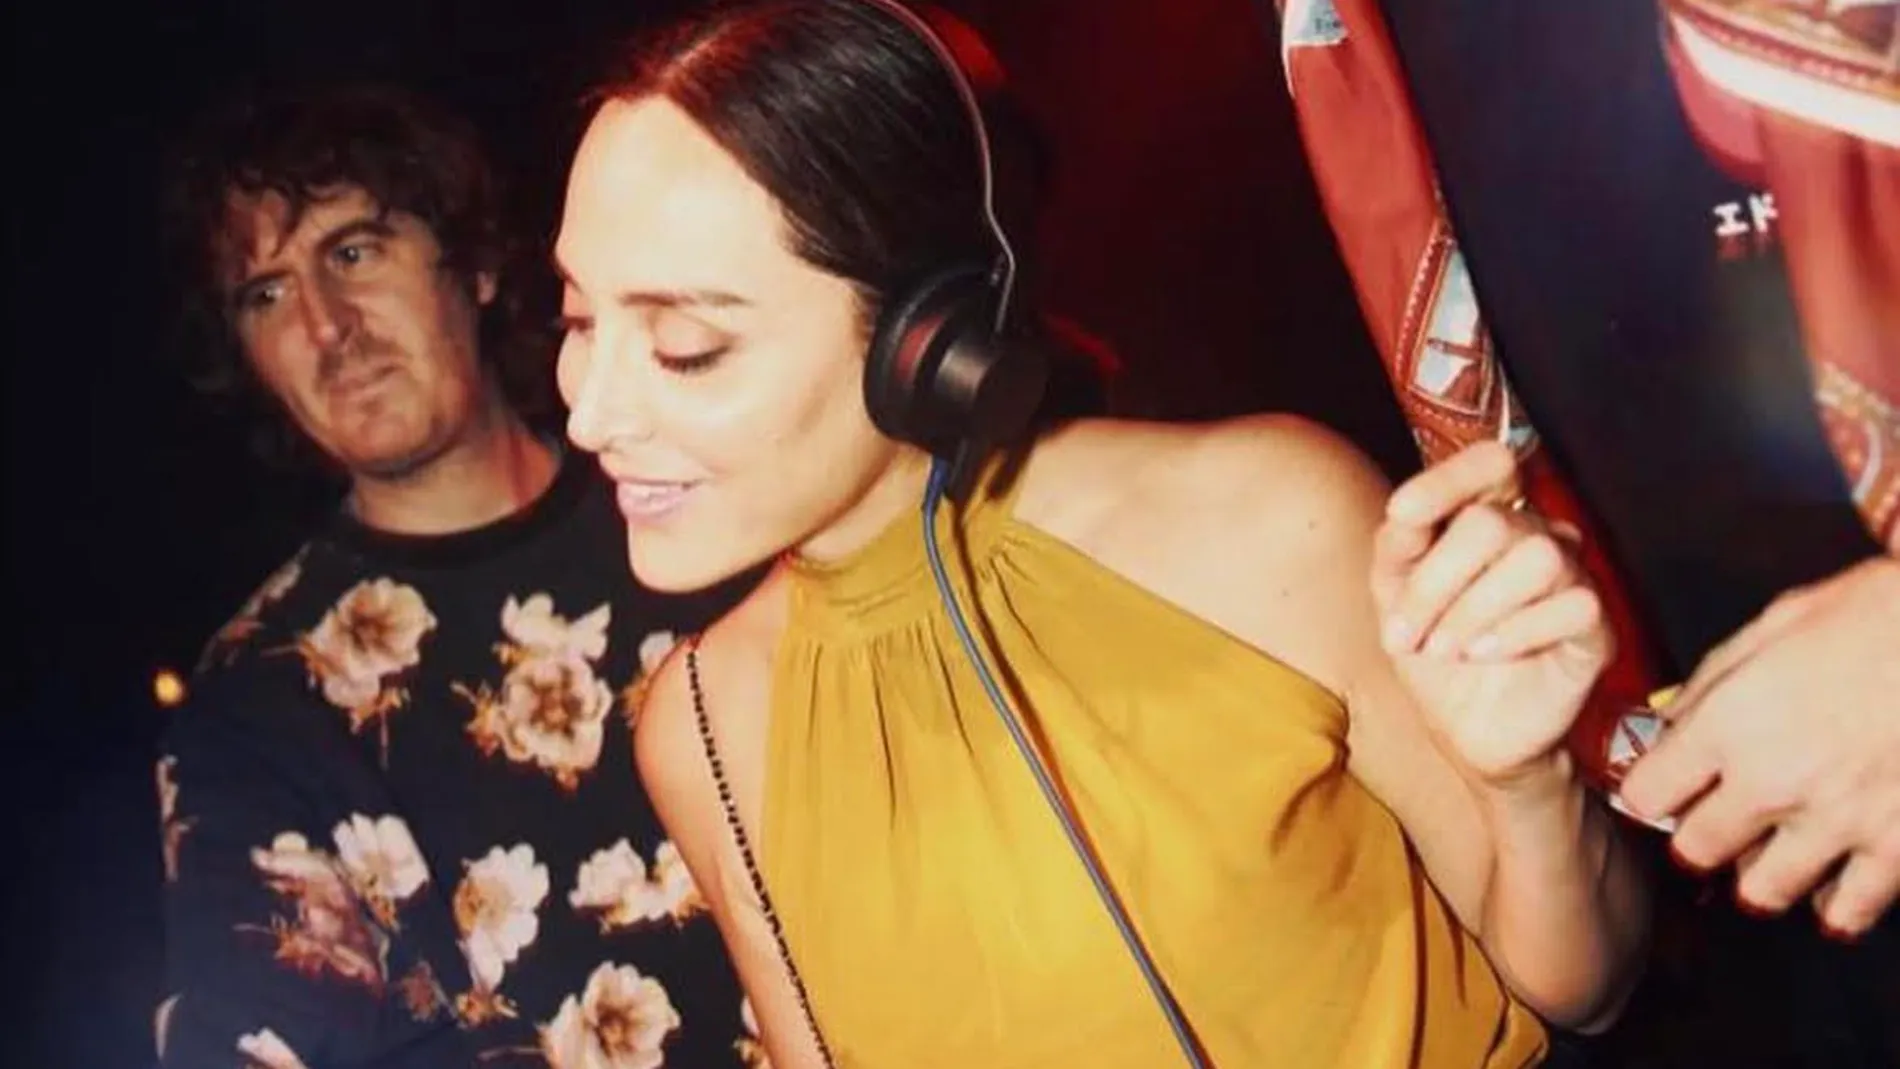 Tamara Falcó posa como DJ en la discoteca de su novio.